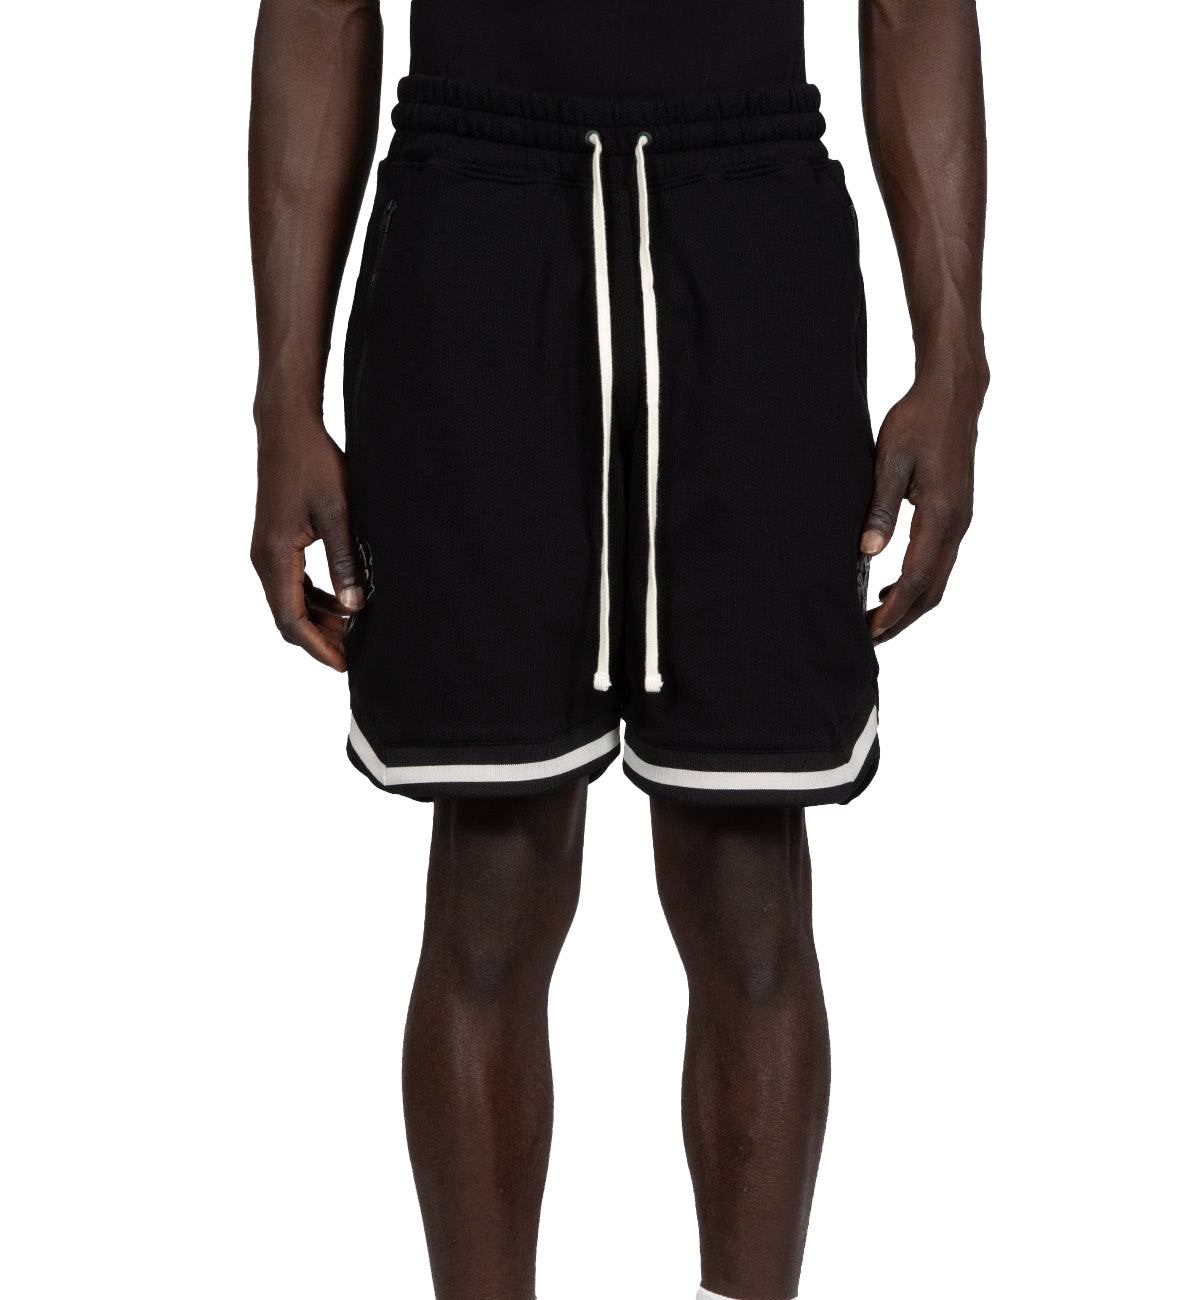 Represent Basketball Shorts Pant (Black)